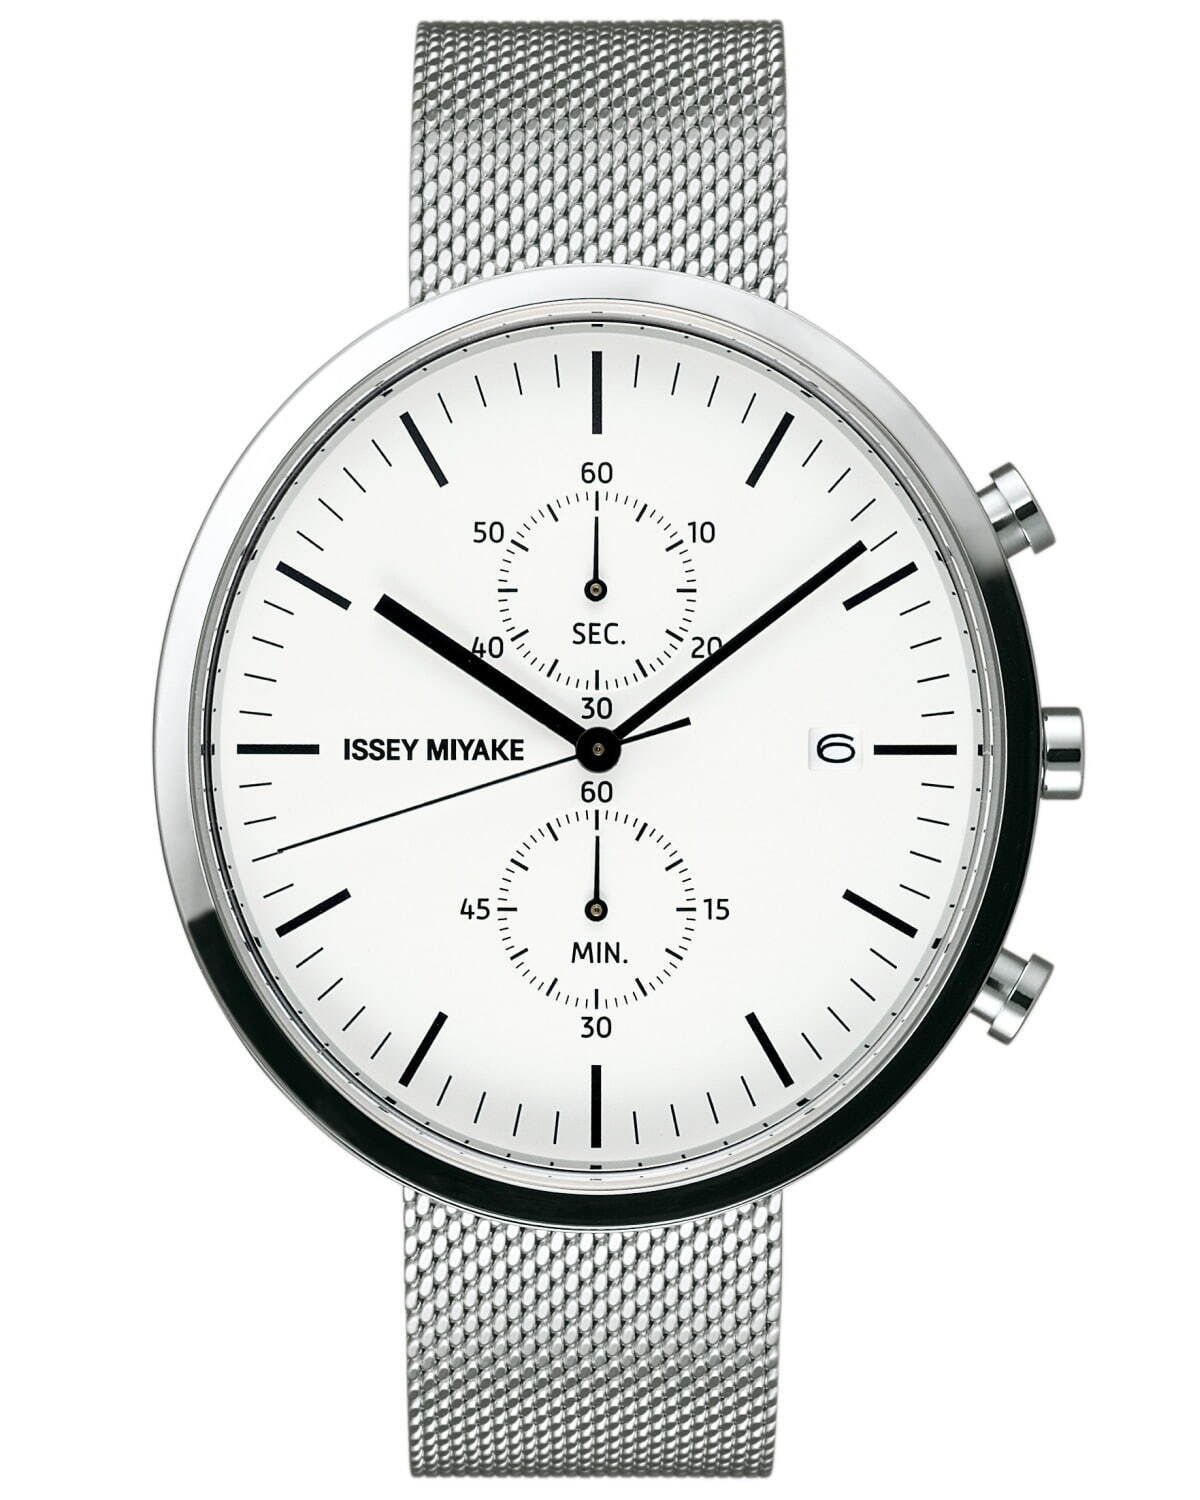 イッセイ ミヤケ ウオッチ“楕円形”の新作腕時計「エリプス」深澤